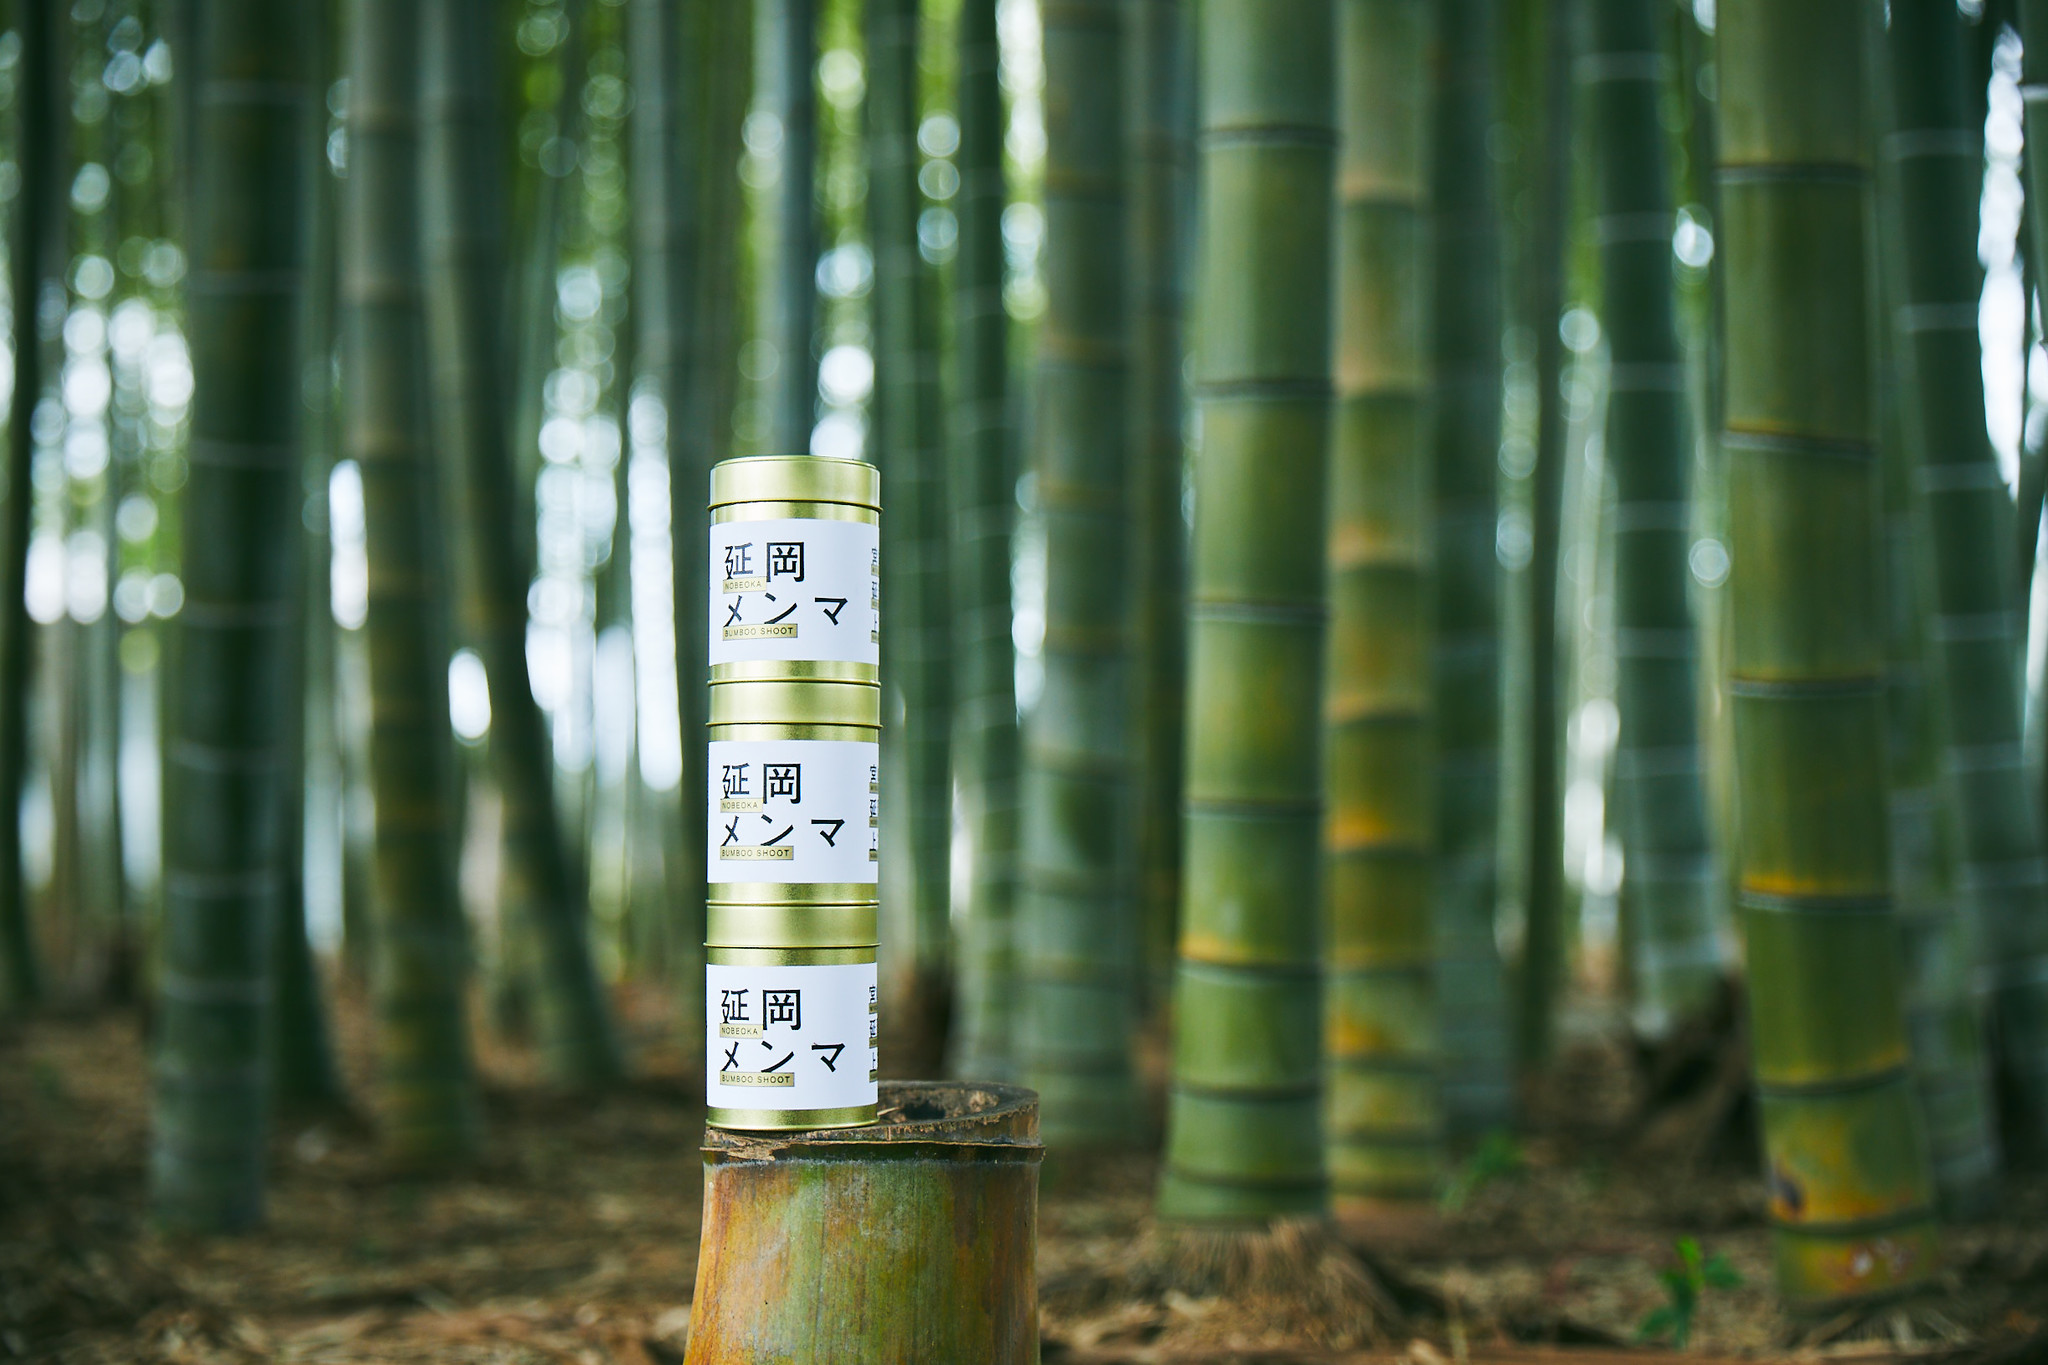 規格外のタケノコを国産メンマにして 放置竹林の課題解決へ 森を育てる 延岡メンマ を提供するlocal Bambooとja延岡が業務提携 Local Bamboo株式会社のプレスリリース